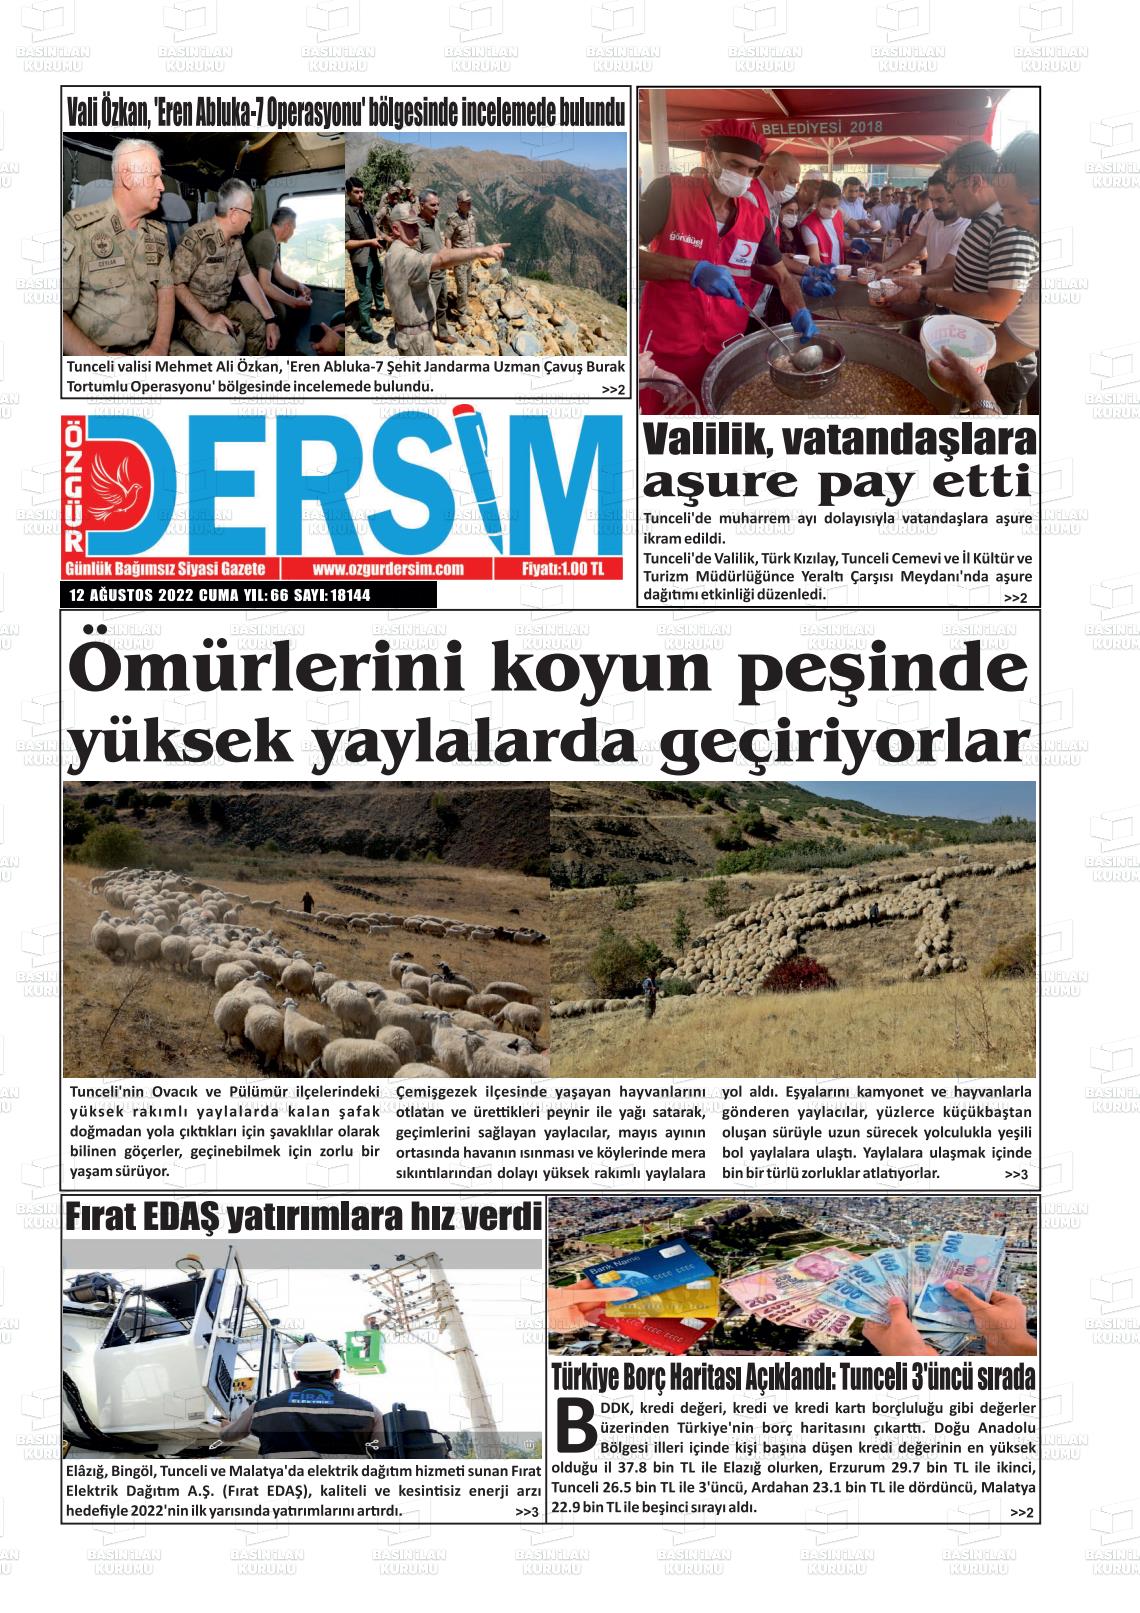 12 Ağustos 2022 Özgür Dersim Gazete Manşeti